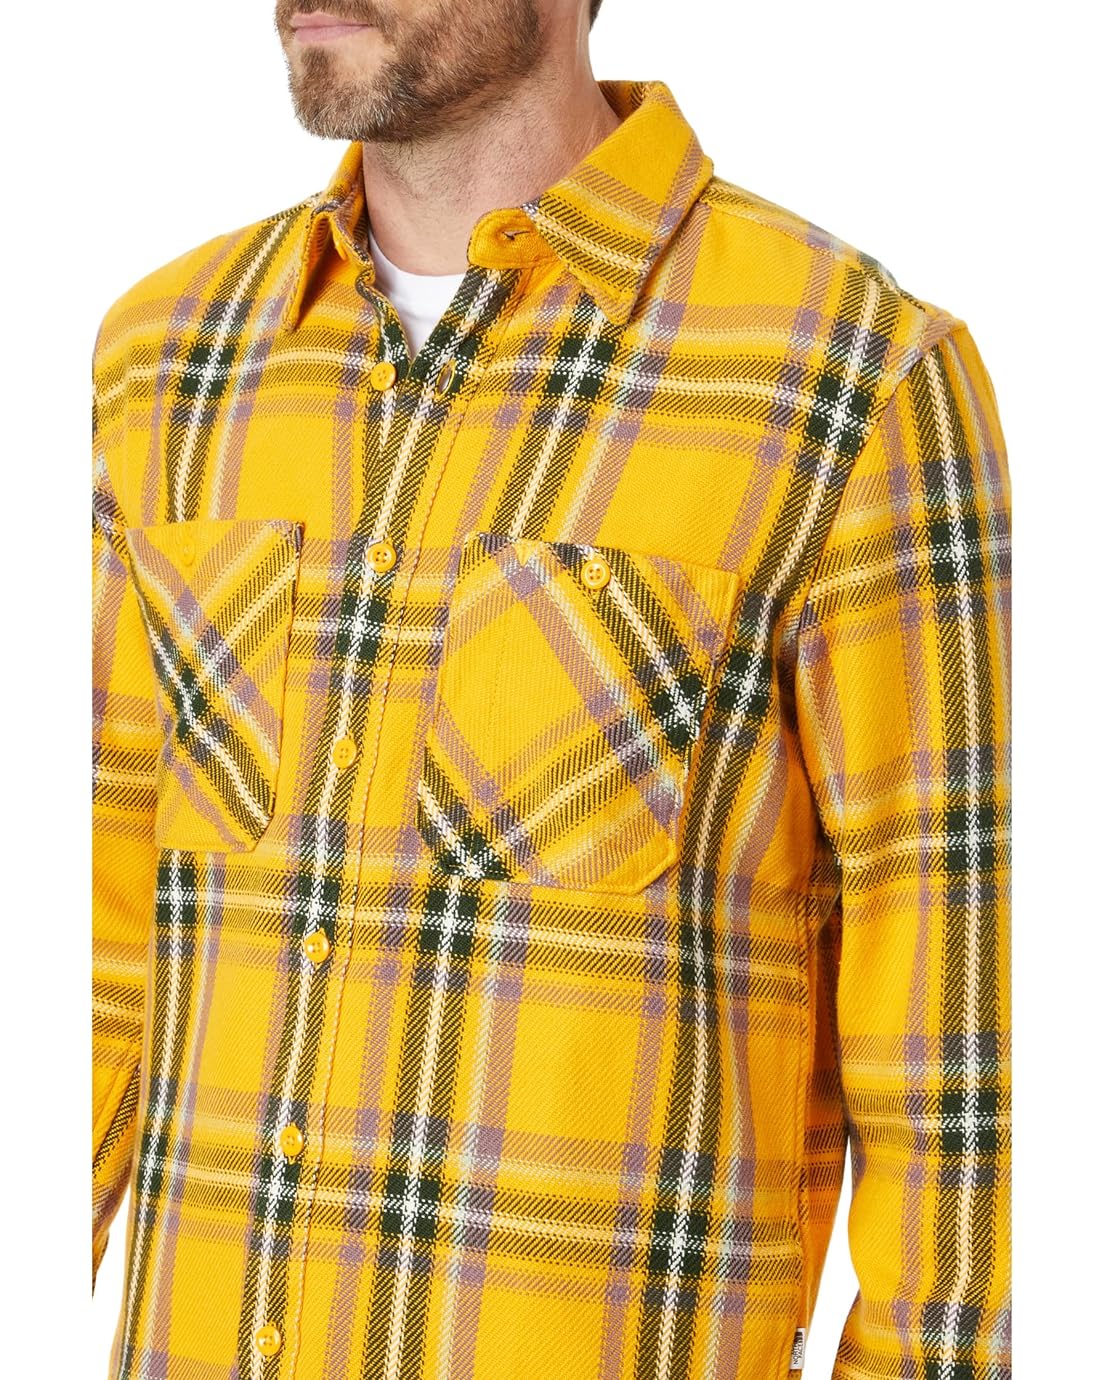 노스페이스 The North Face Valley Twill Flannel Shirt